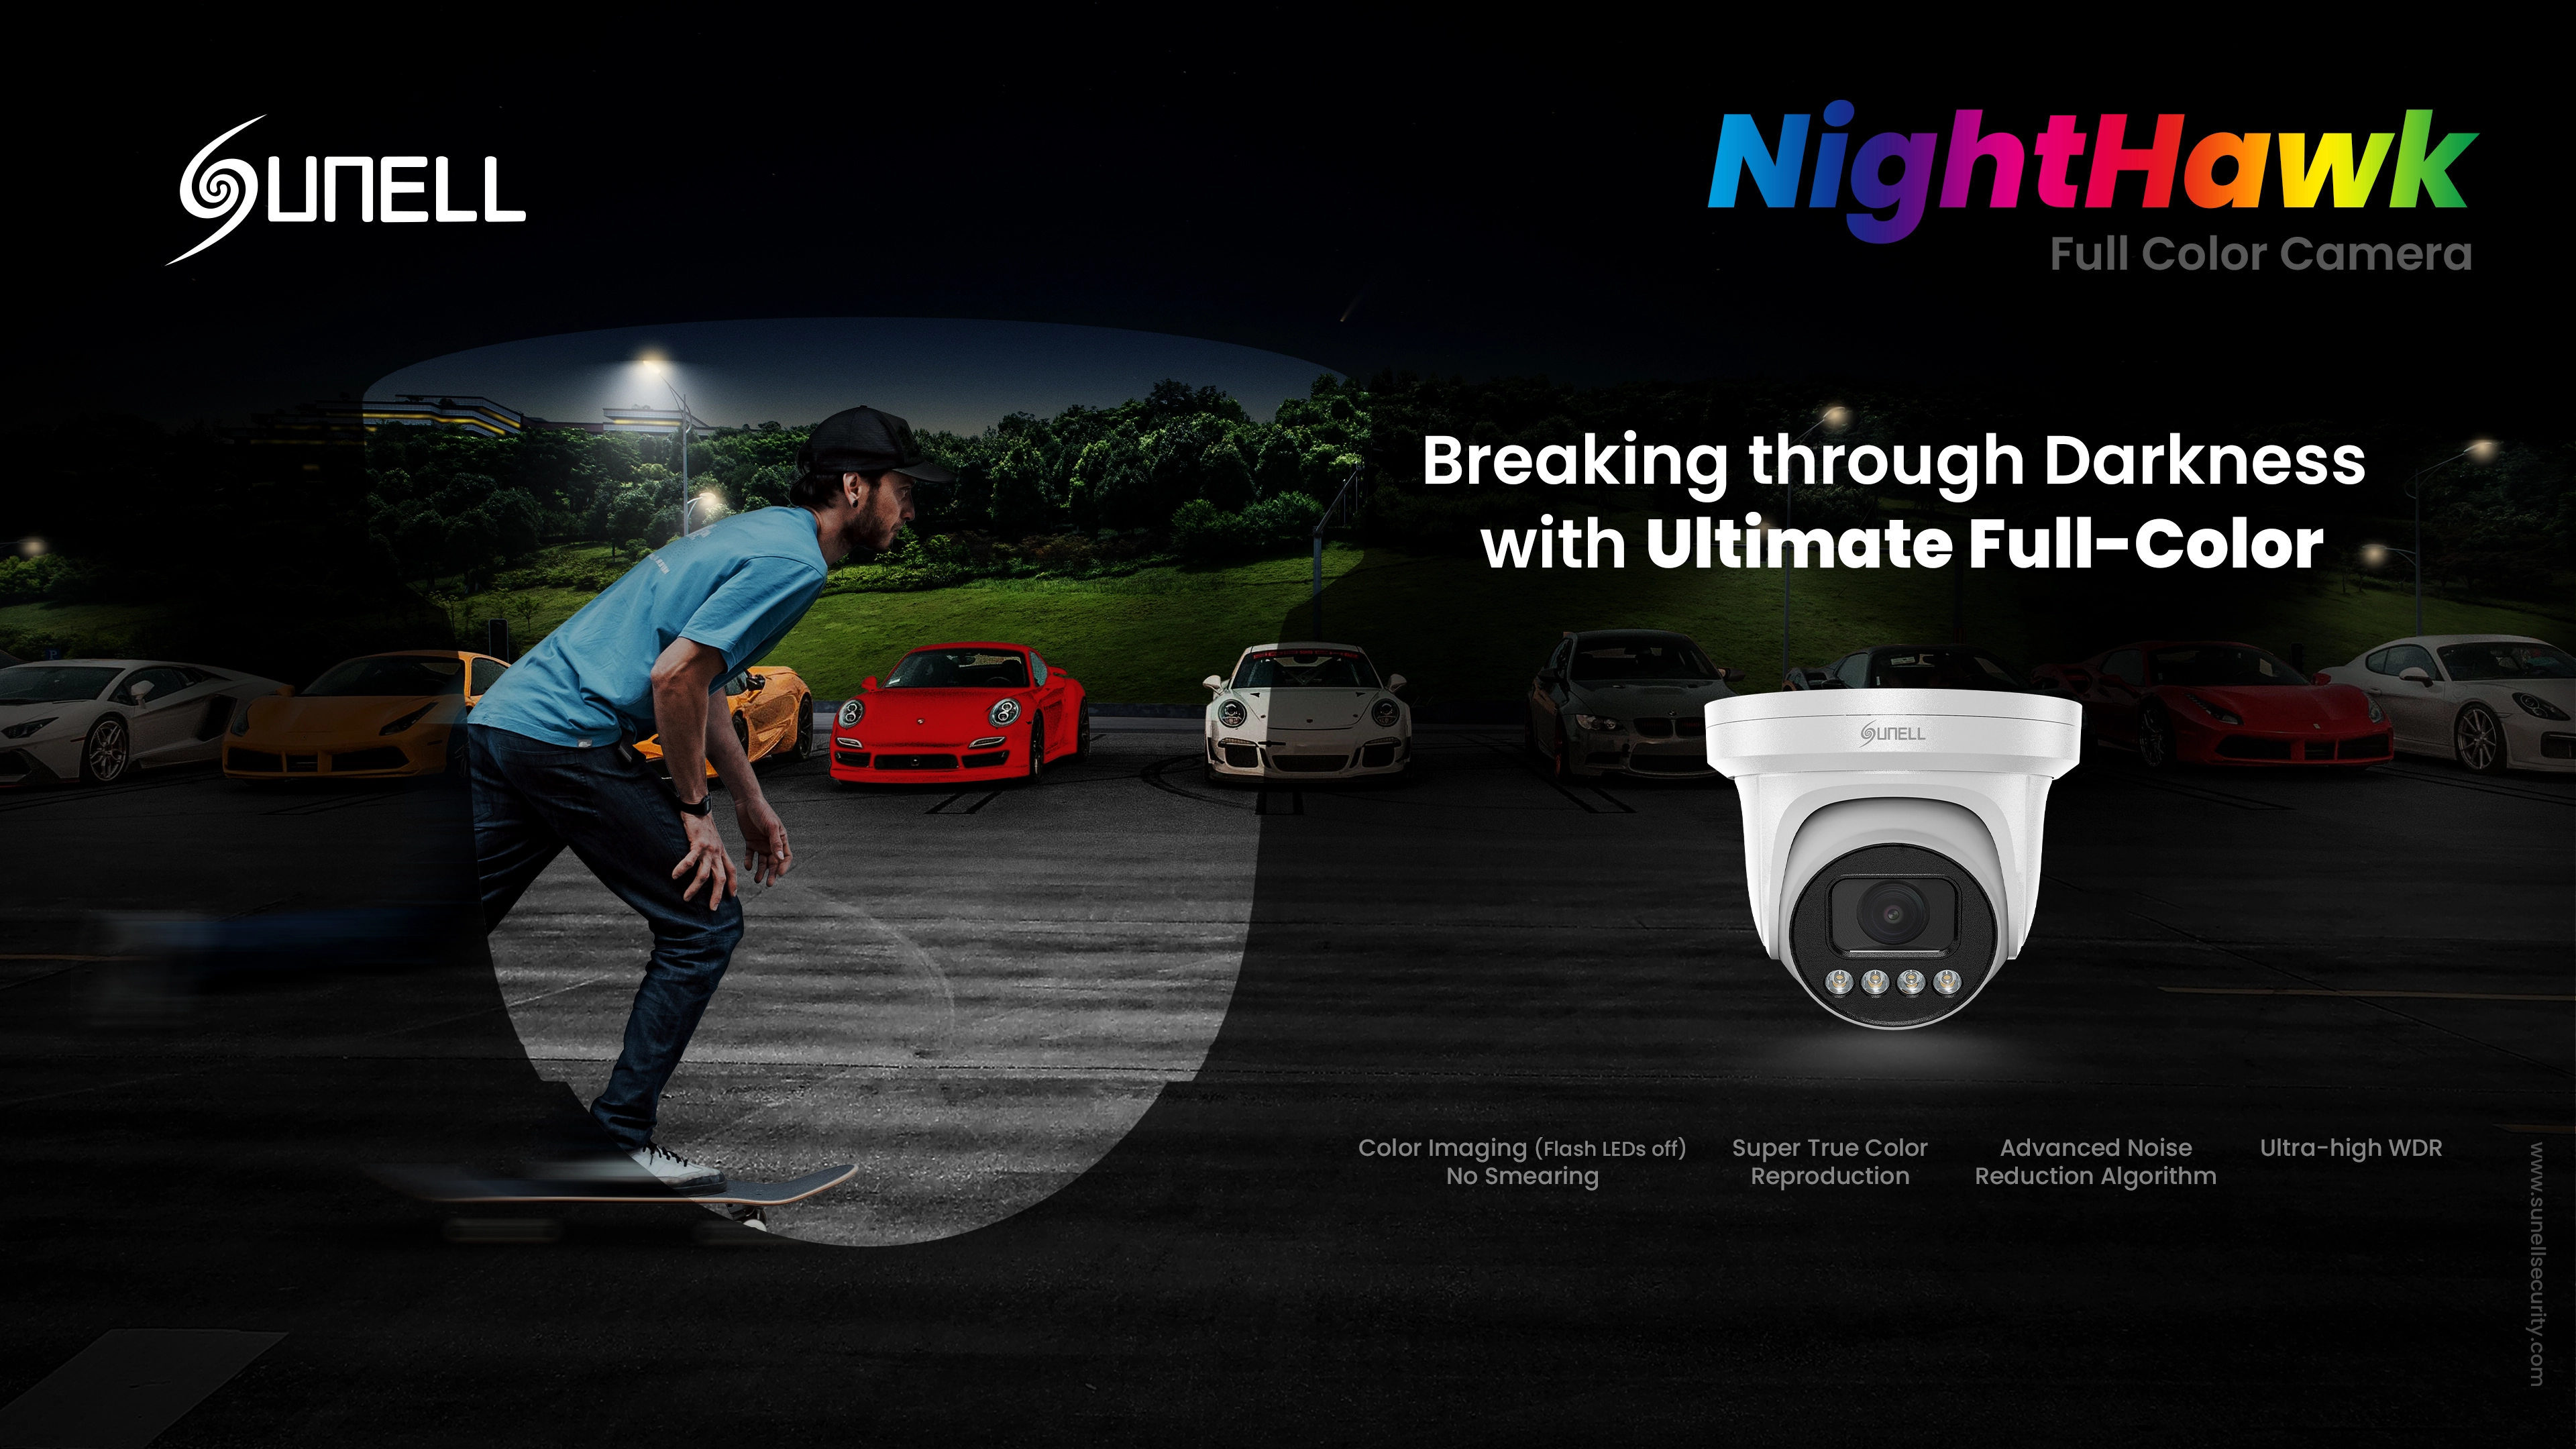 كاميرا Night Hawk-Sunell الذكية فائقة الإضاءة بالألوان الكاملة قادمة